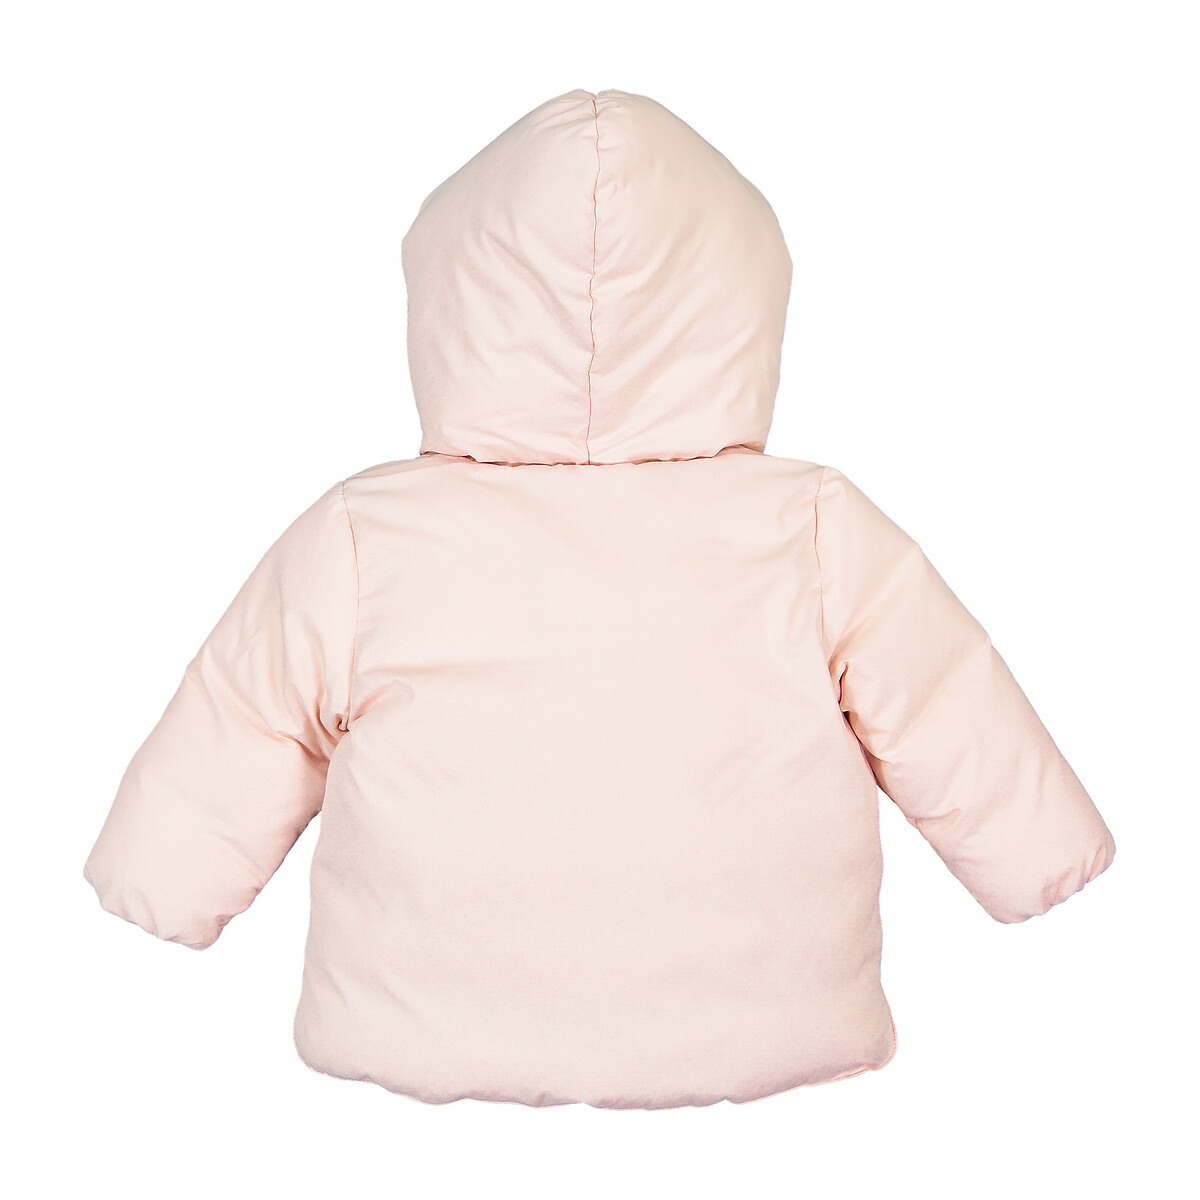 Куртка La Redoute Стеганая утепленная с капюшоном 3 мес-4 года 4 года - 102 см розовый, размер 4 года - 102 см - фото 4